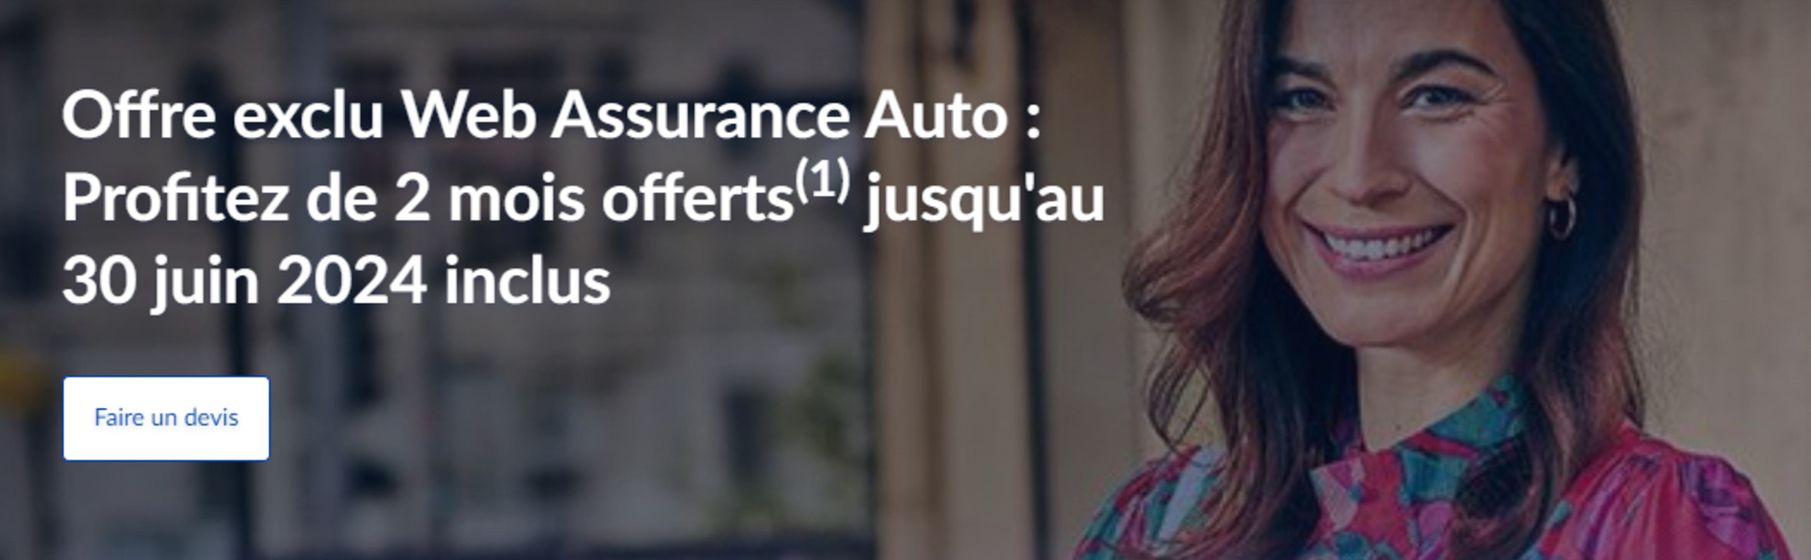 Offre exclu Web Assurance Auto